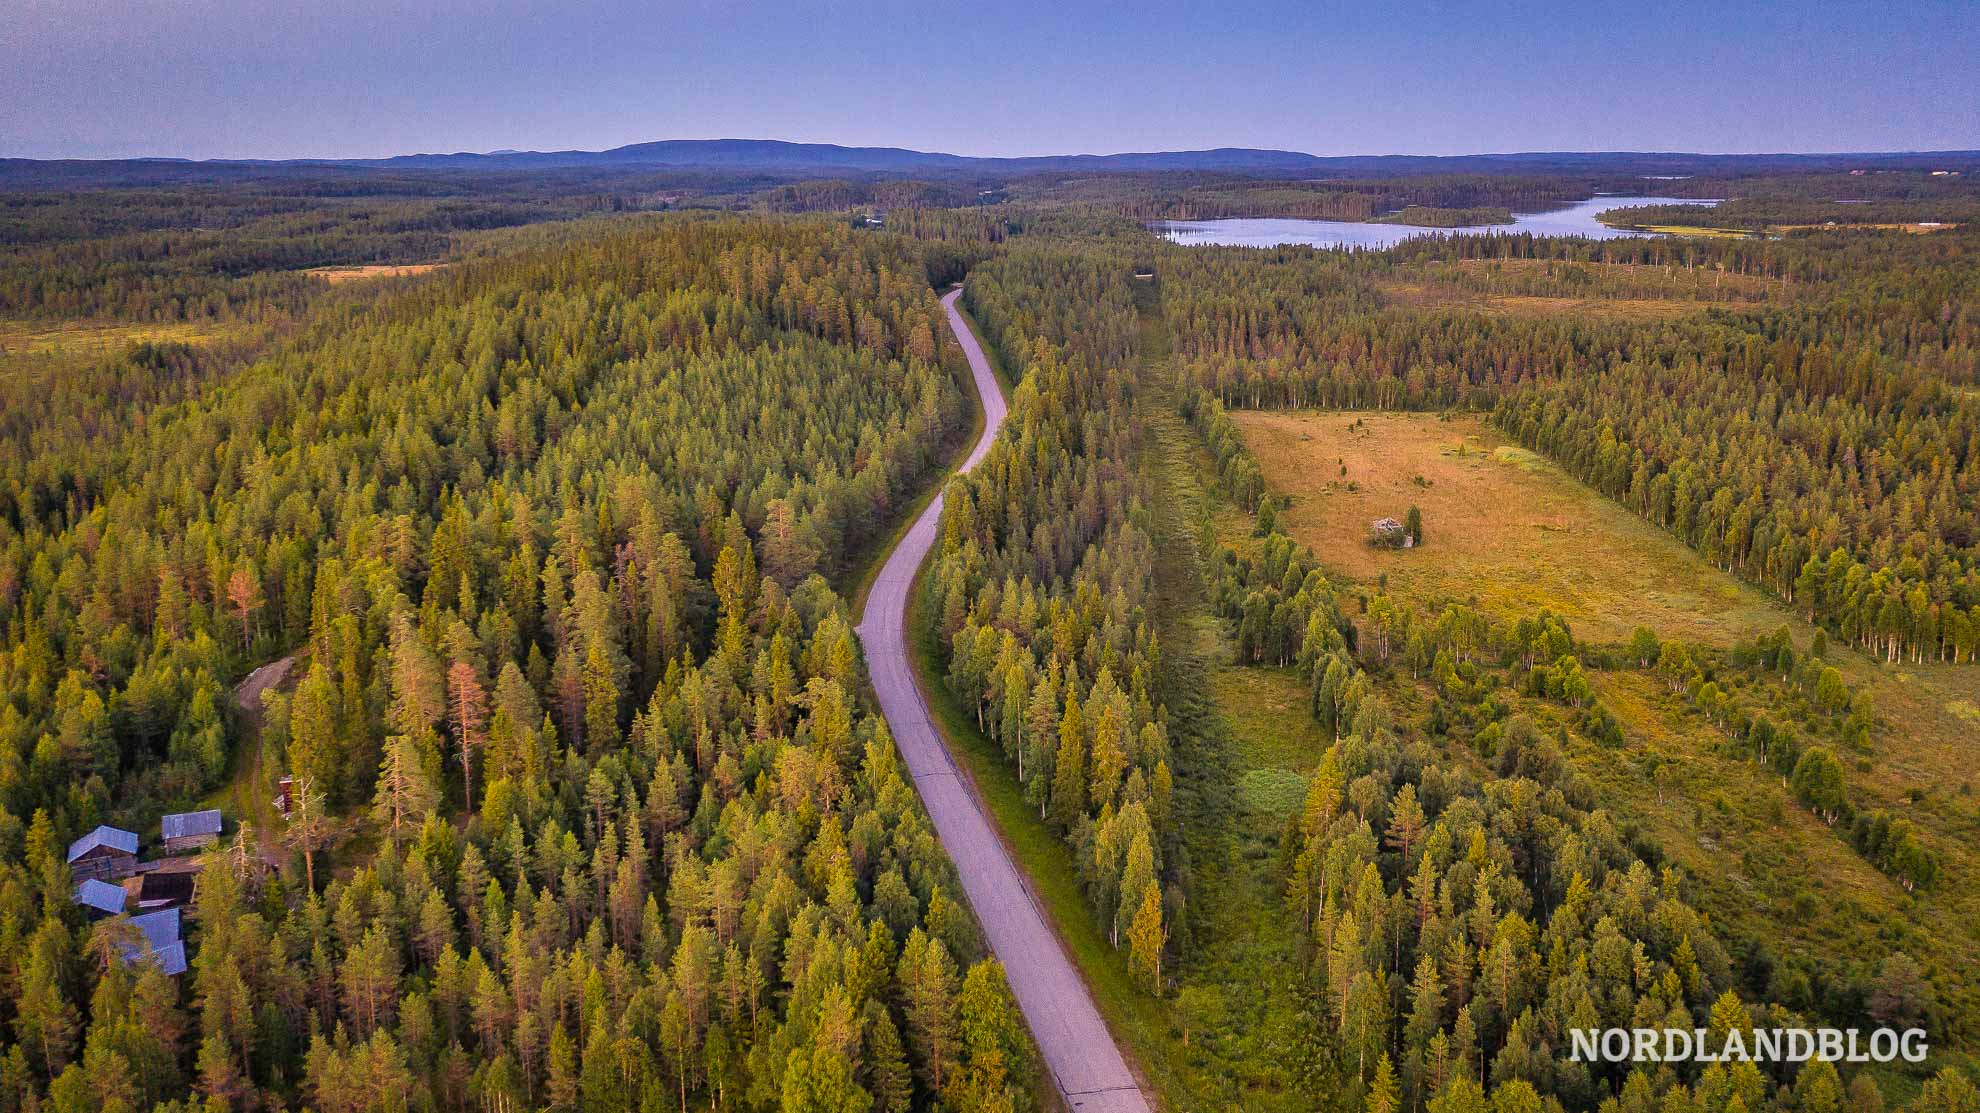 Wohnmobil Rundreise Nordfinnland Lappland Finnland - unendliche Weite in Nordfinnland 